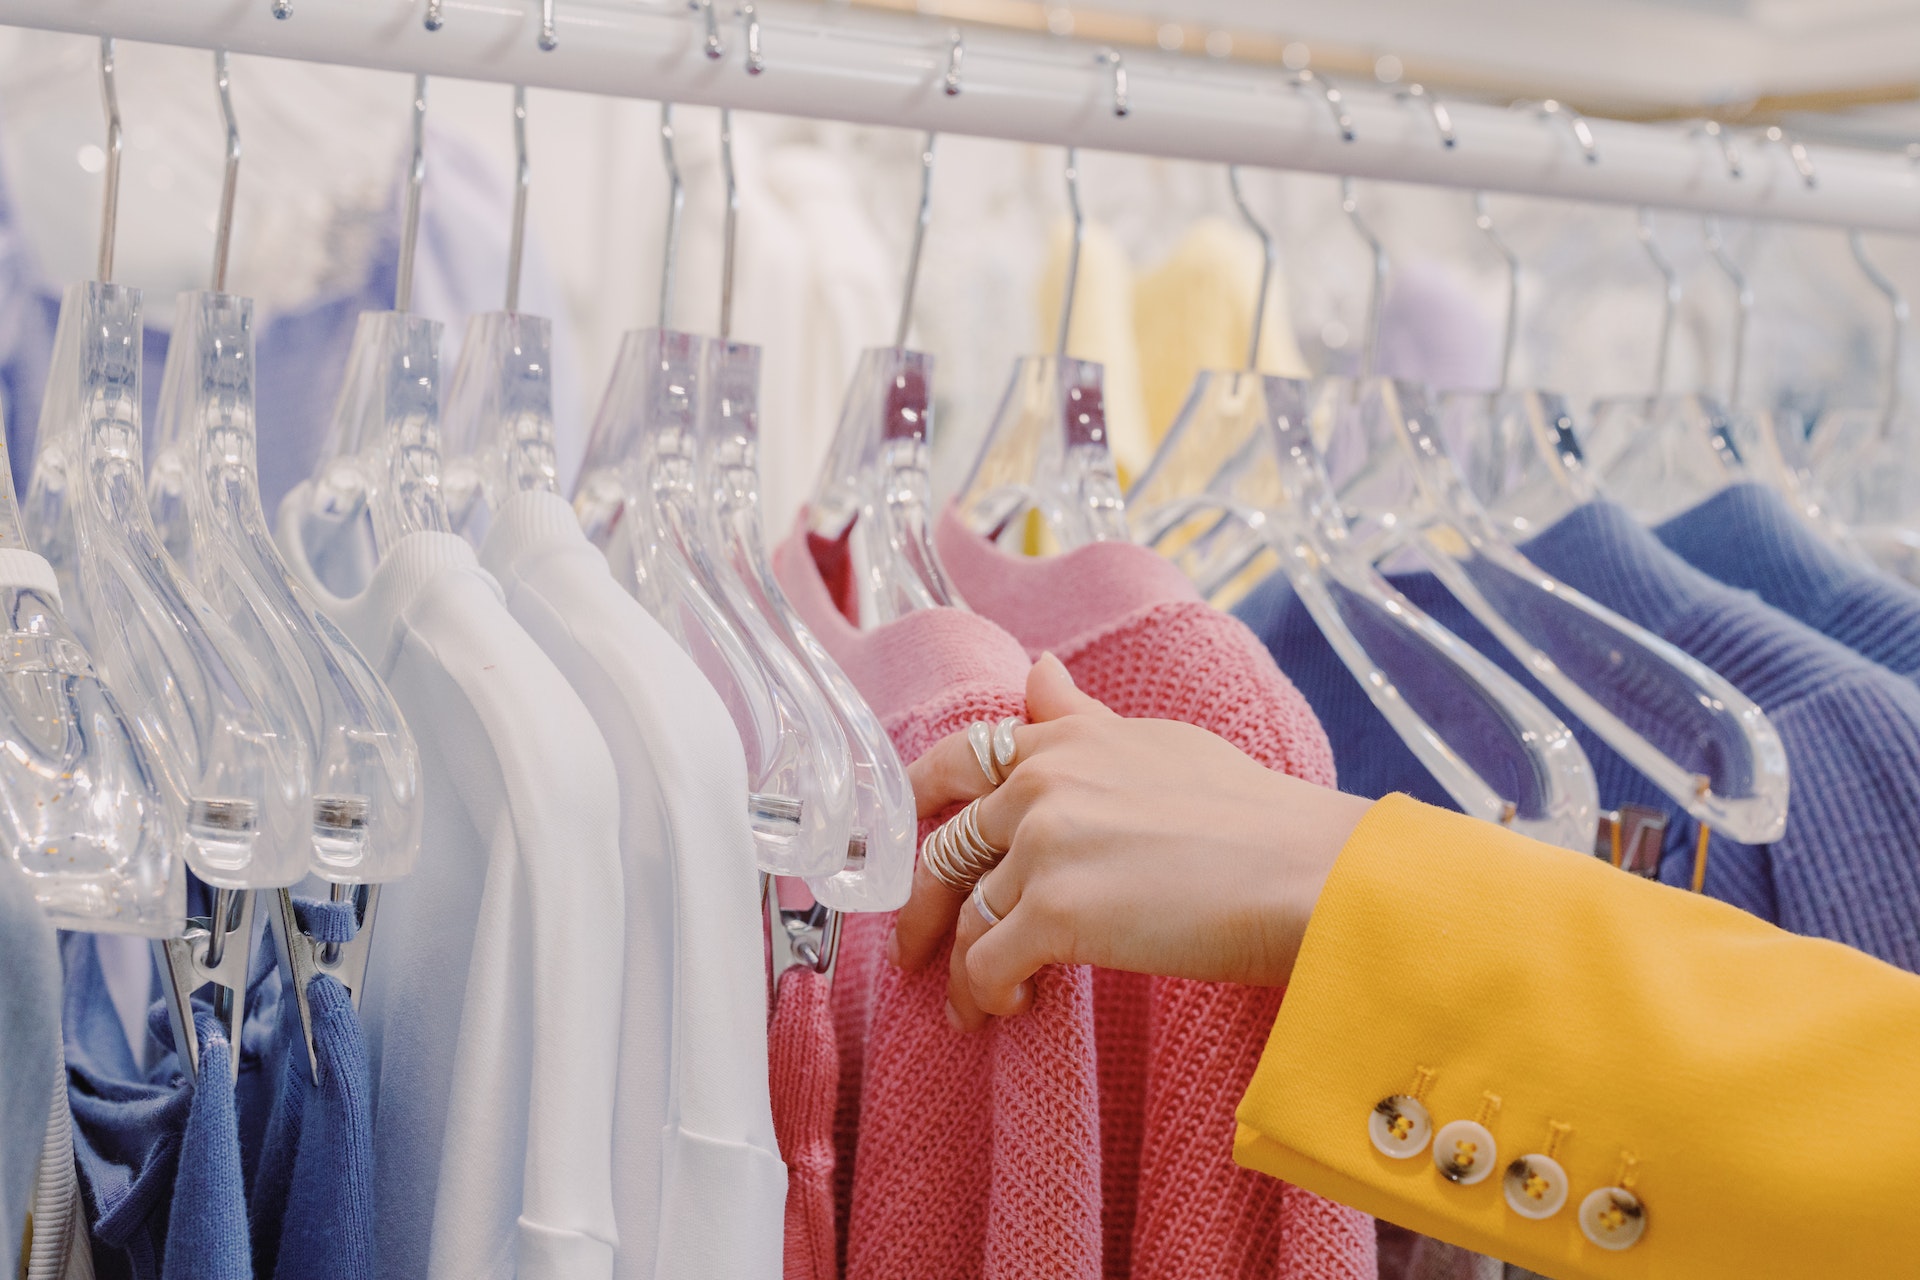 Peligros para la salud de comprar ropa usada y cómo evitarlos